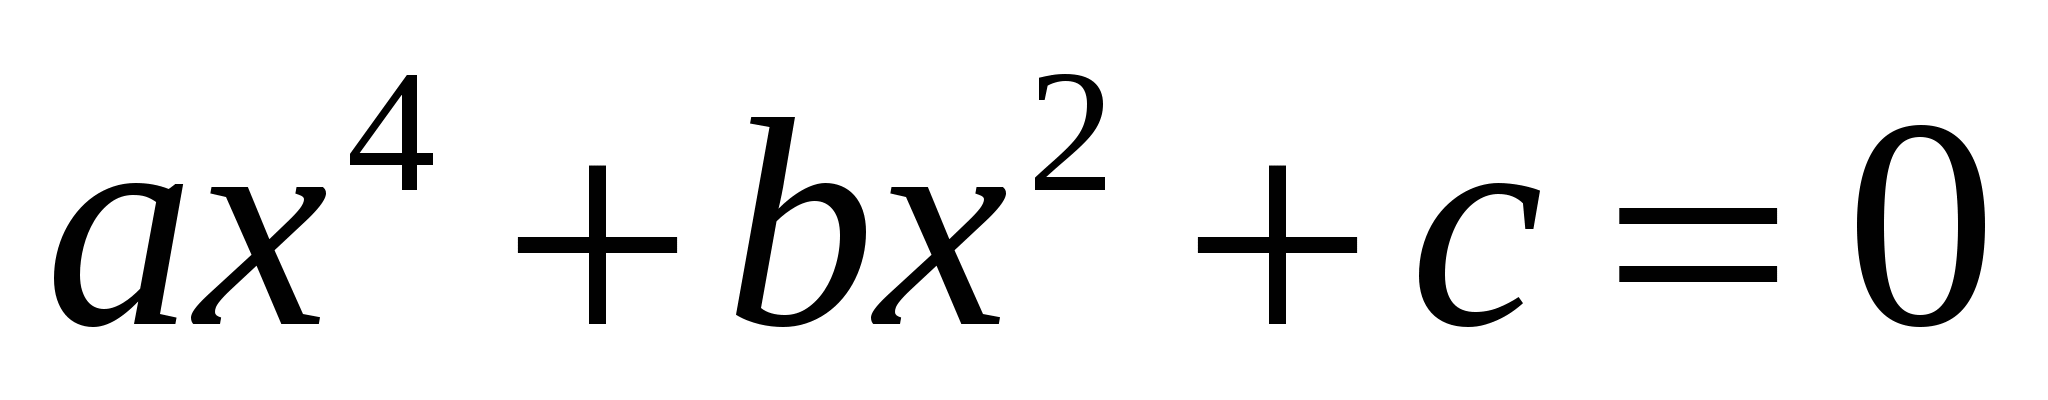 Разработка урока алгебры по теме Решение текстовых задач с помощью квадратных уравнений (8 класс)